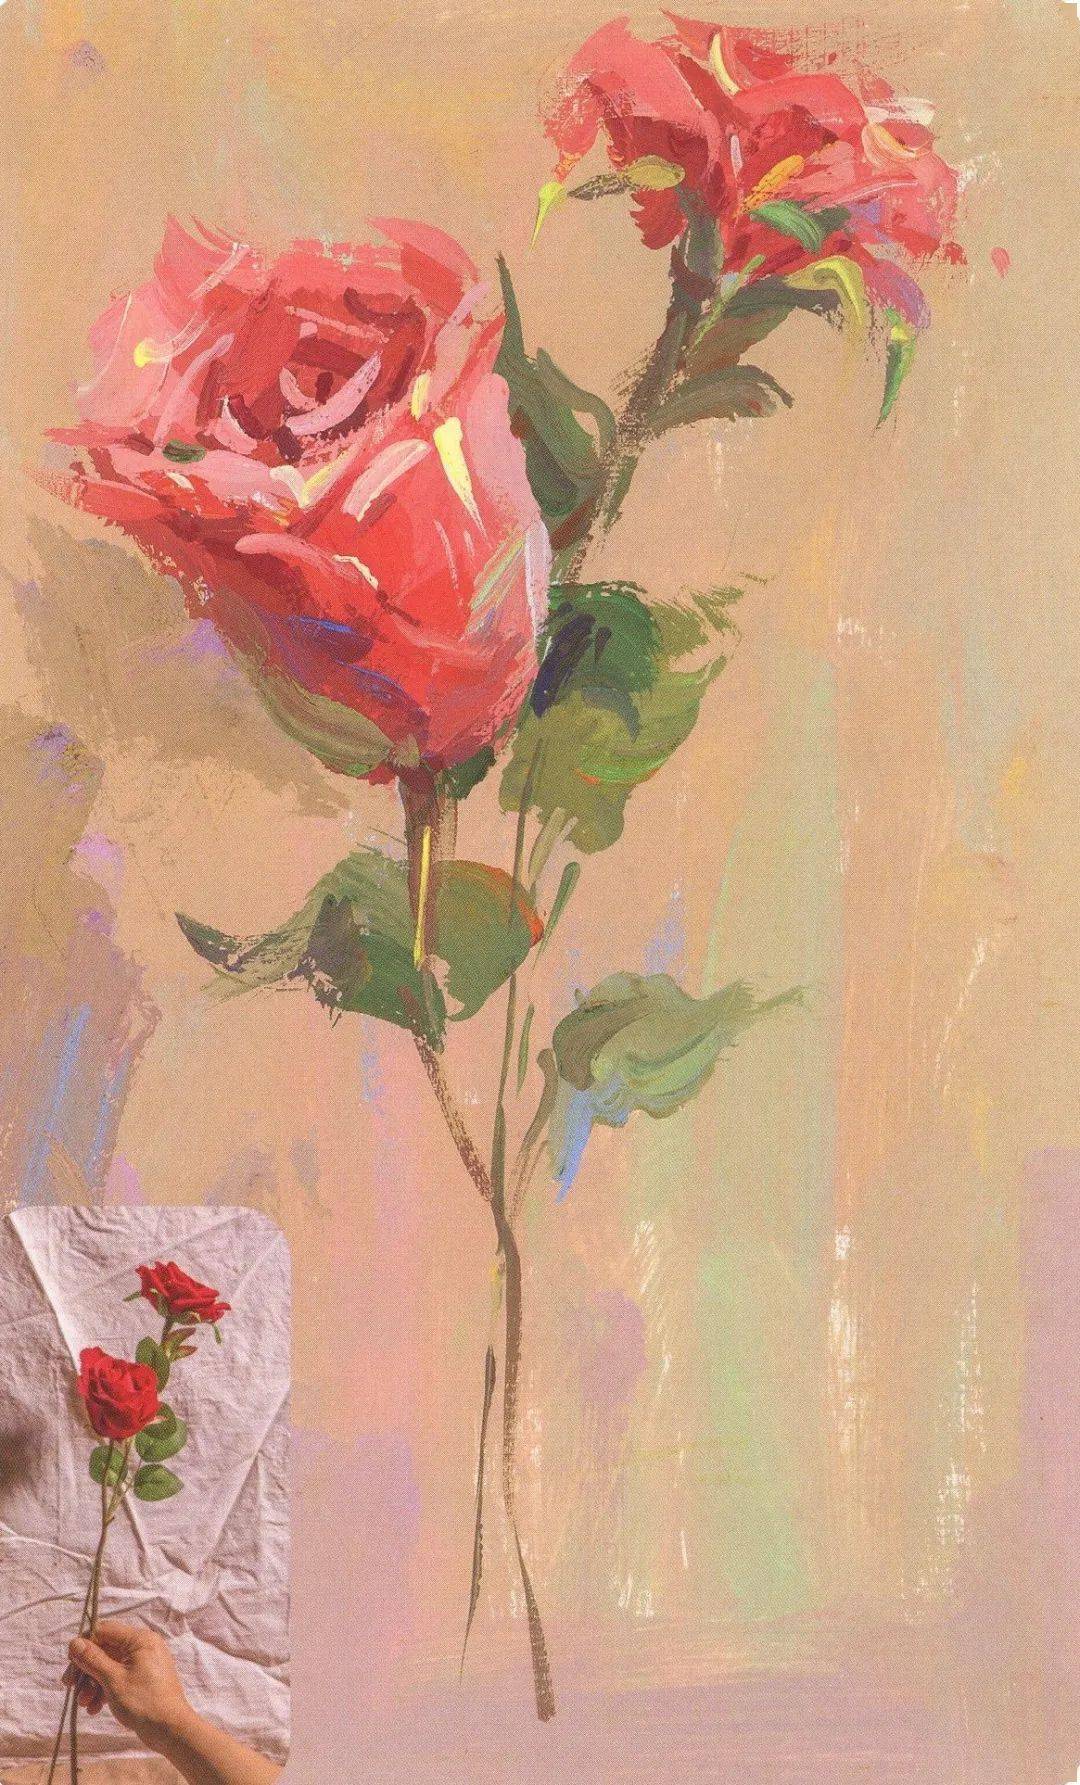 高分干货丨色彩静物单体中玫瑰花的调色与刻画步骤